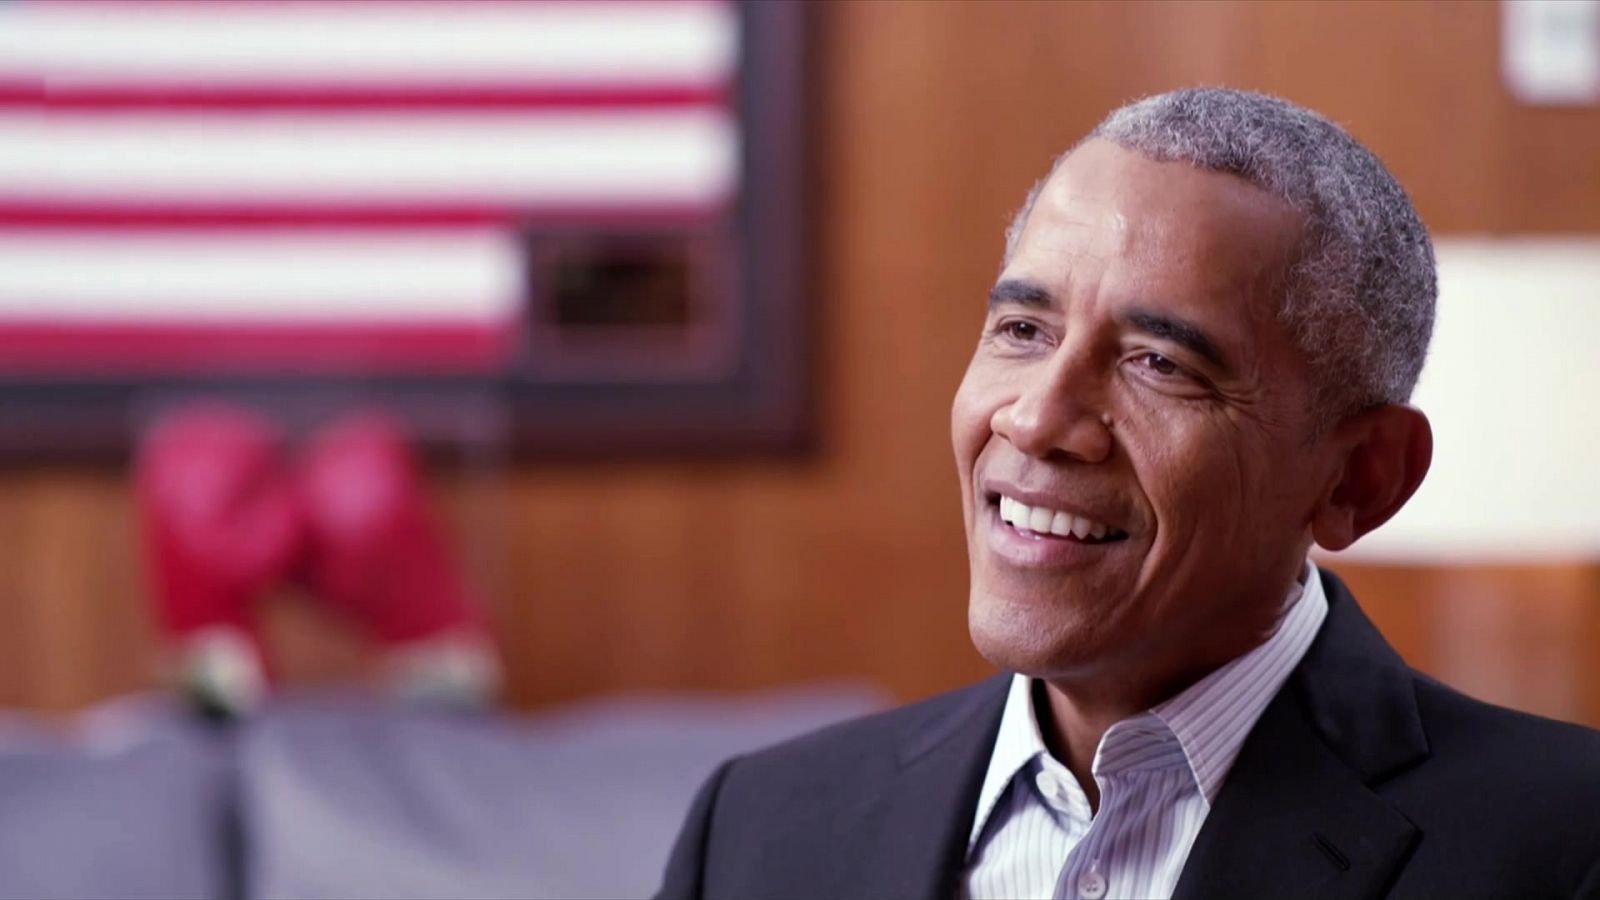 Informe Semanal - Entrevista con Obama  - ver ahora